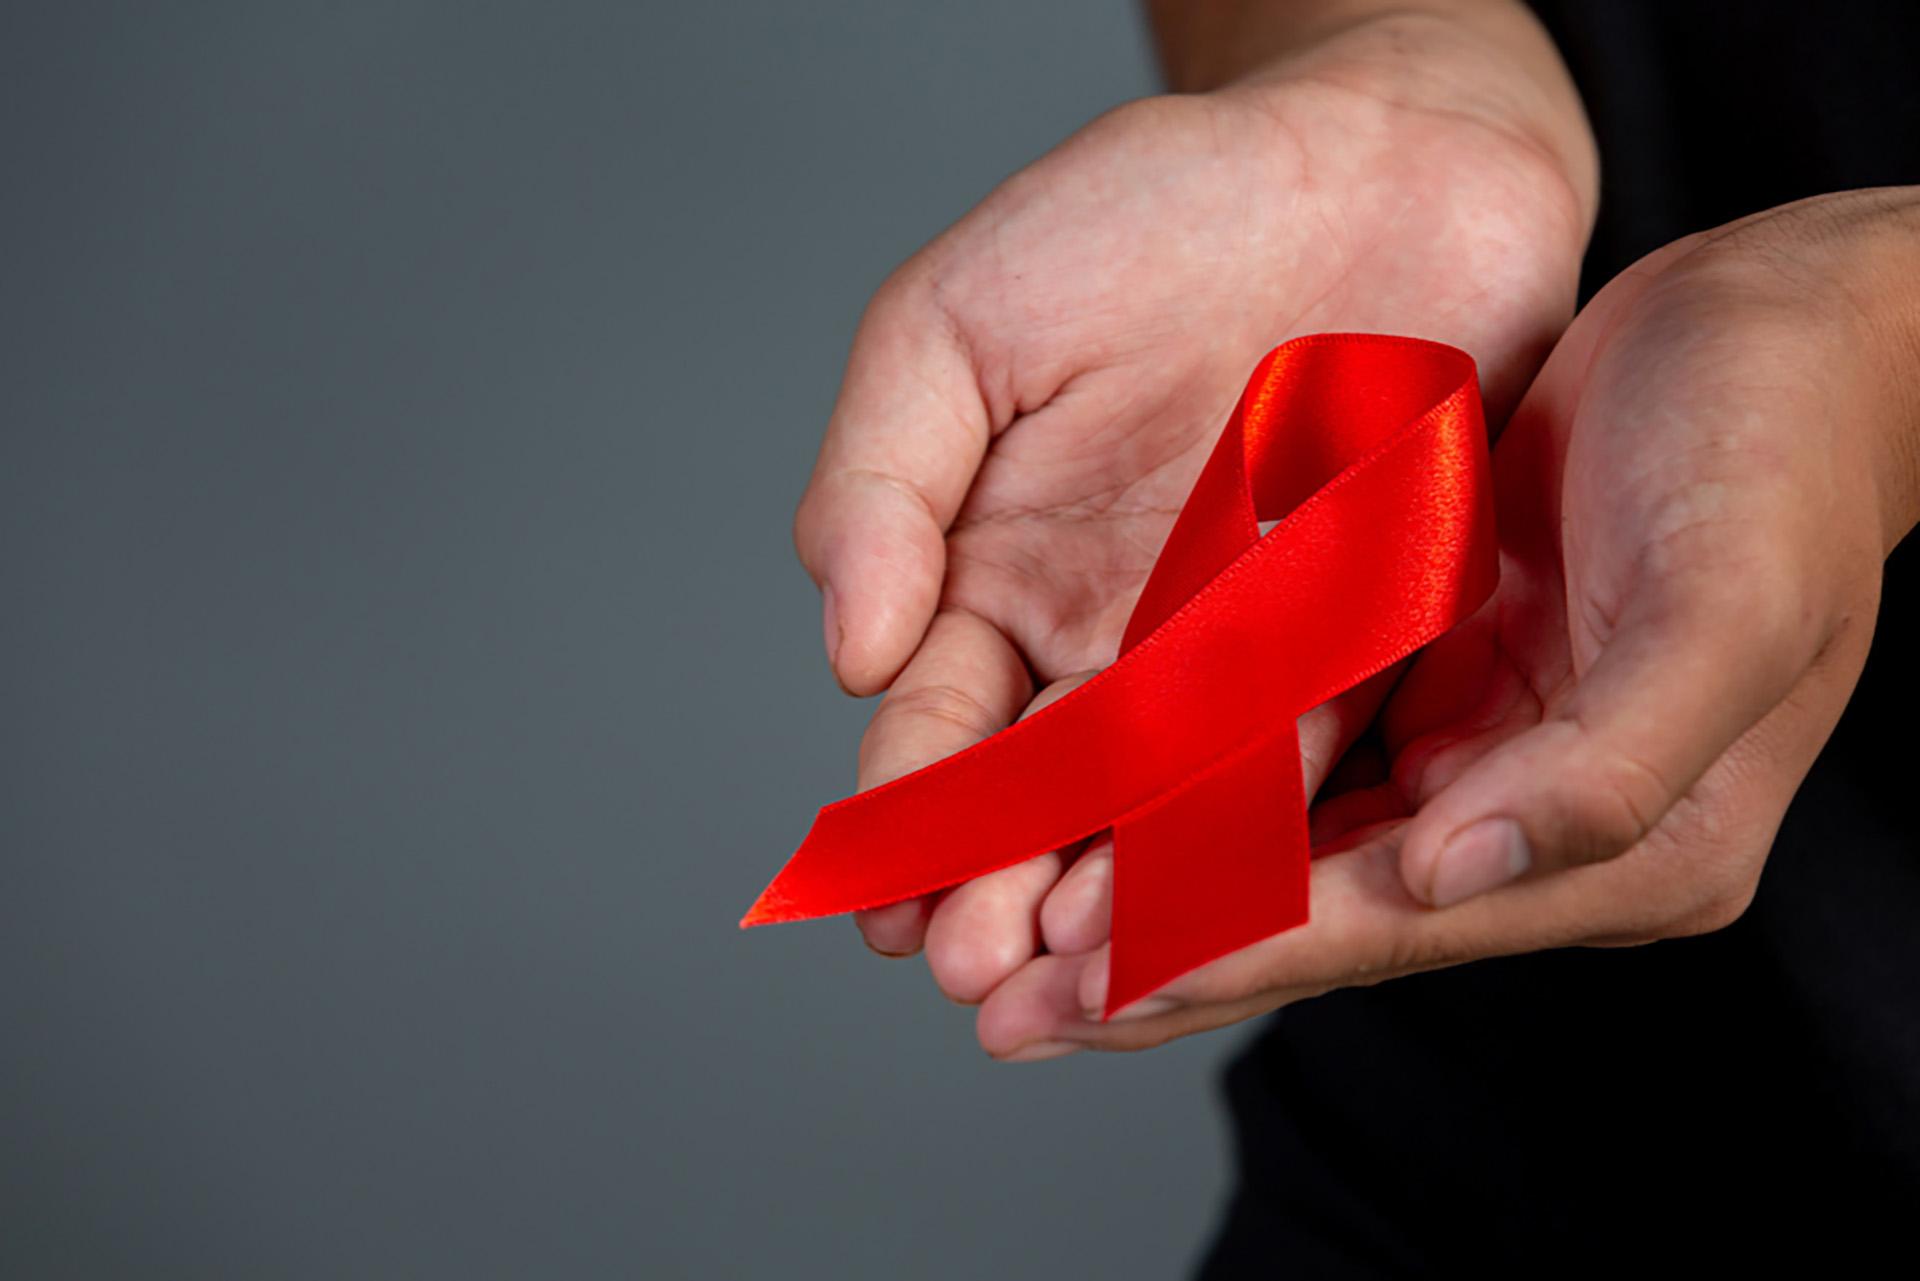 जागतिक एड्स दिनासाठी मार्गदर्शक: त्याचे महत्त्व आणि एड्सचा तुमच्या जीवनावर कसा परिणाम होतो?